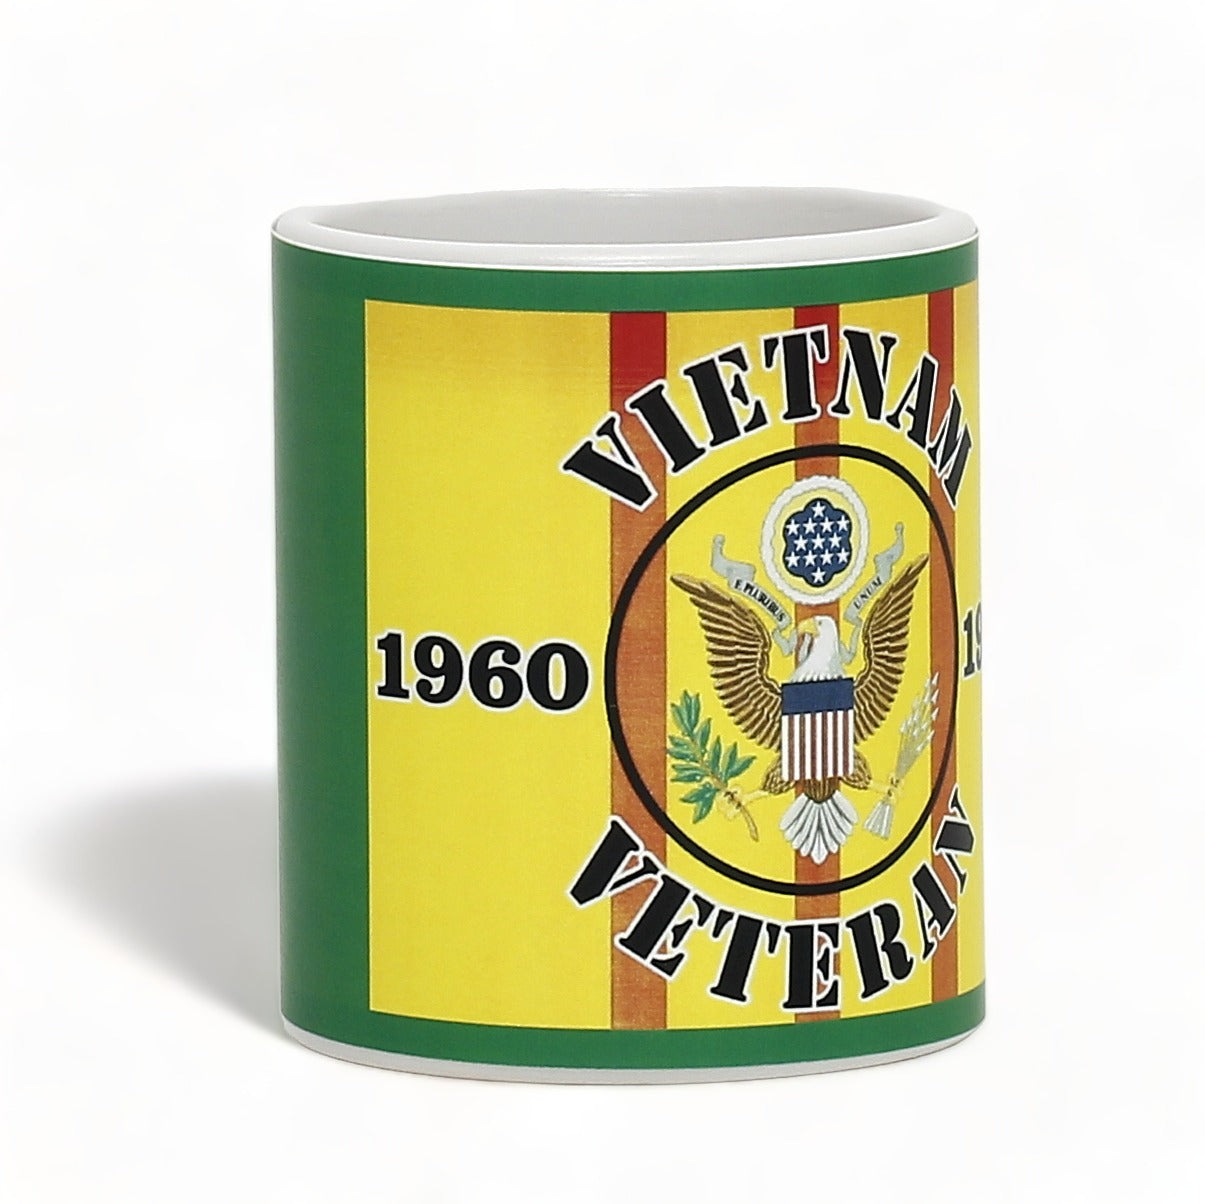 SUBLIMART: Veteran - Mug 'Vietnam Veteran 1960-1975' (Design #27)